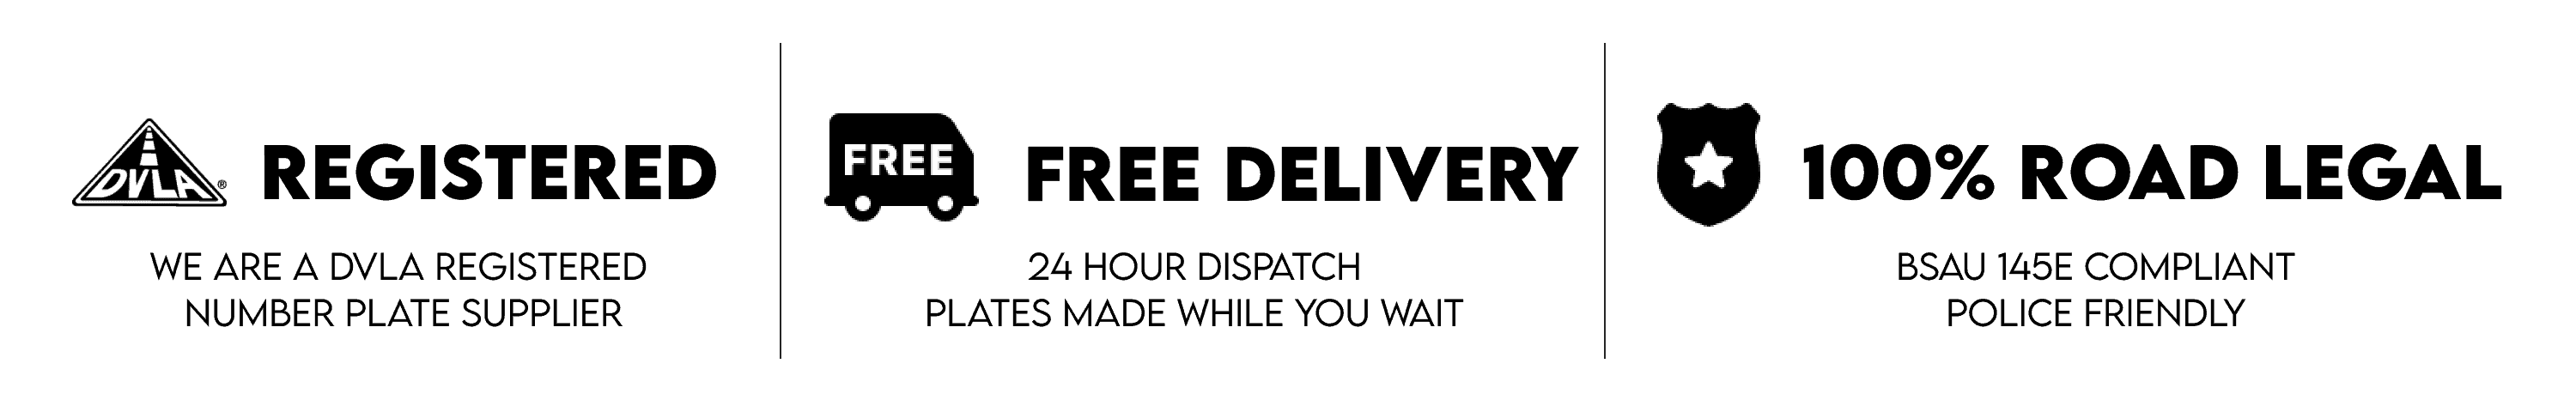 DVLA registered free delivery